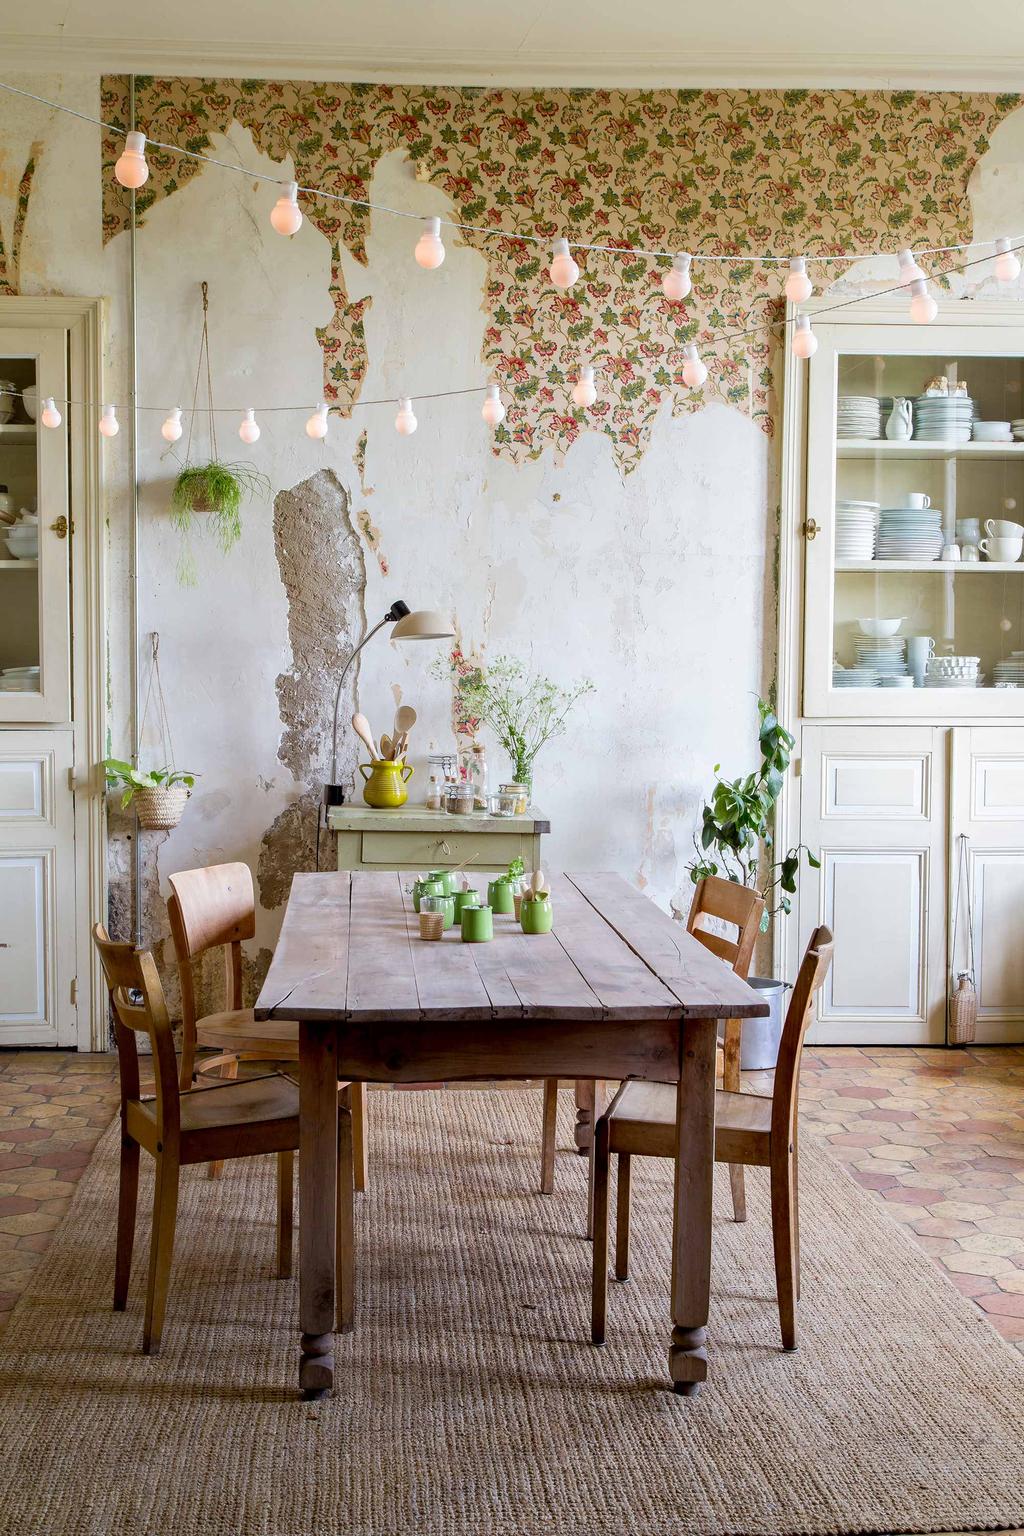 déco champêtre cuisine rustique rétro table bois brut guirlande suspendue papier peint vintage